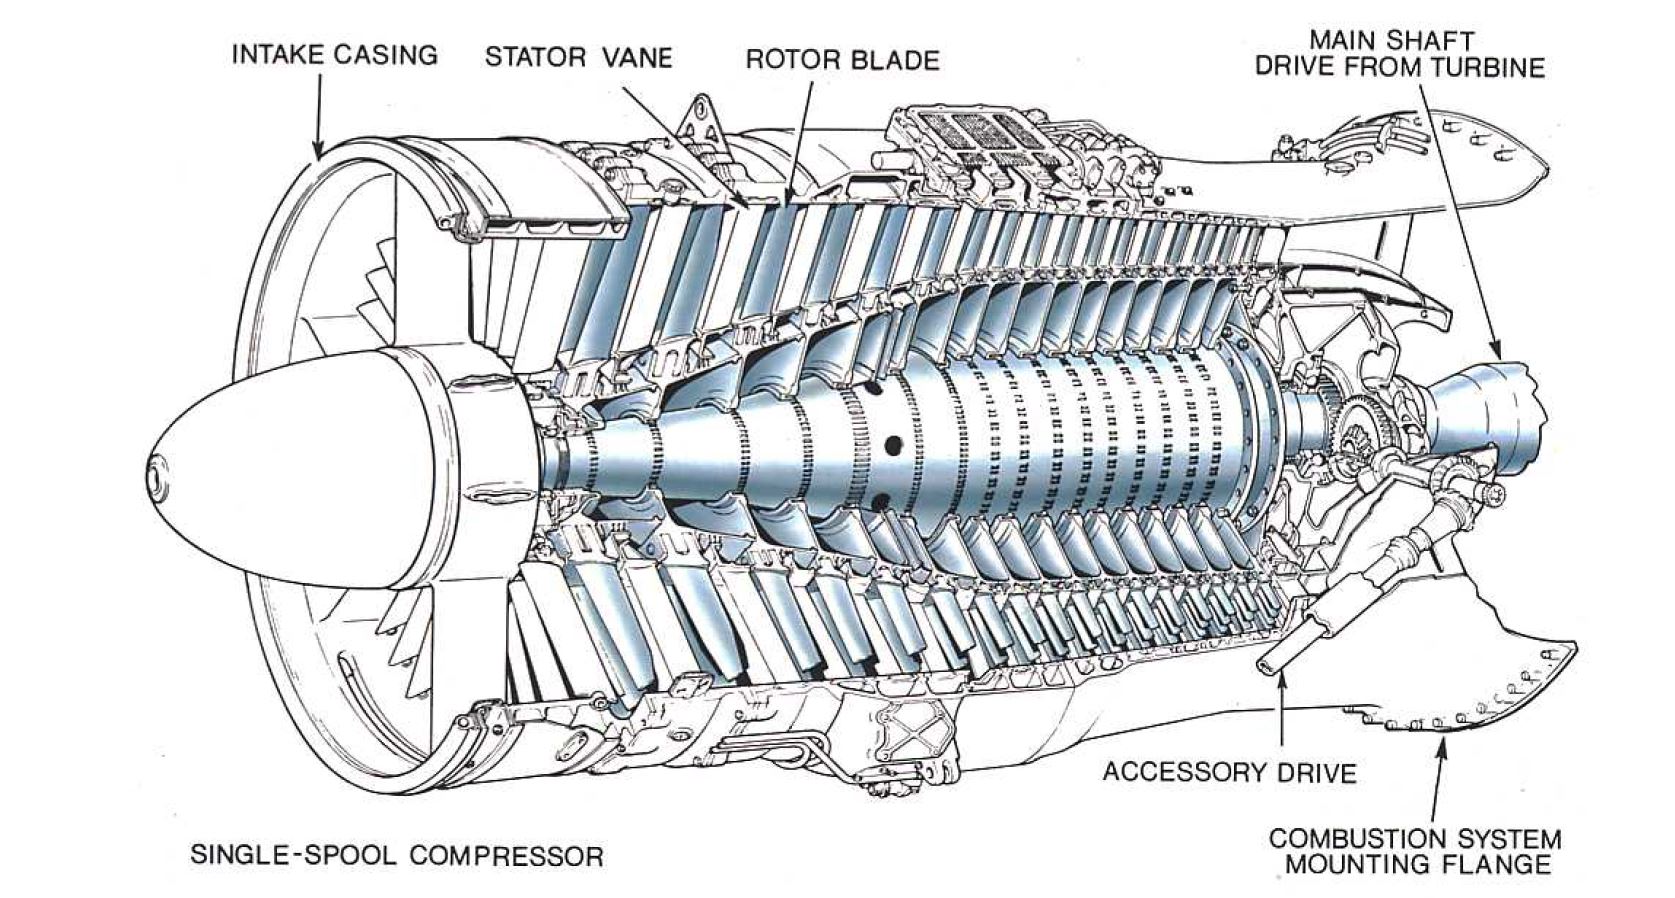 Части двигателя самолета. Многоступенчатый осевой компрессор. Ротор и статор авиационного двигателя. Ротор и статор турбины ГТД. Статор компрессора тв3-117.